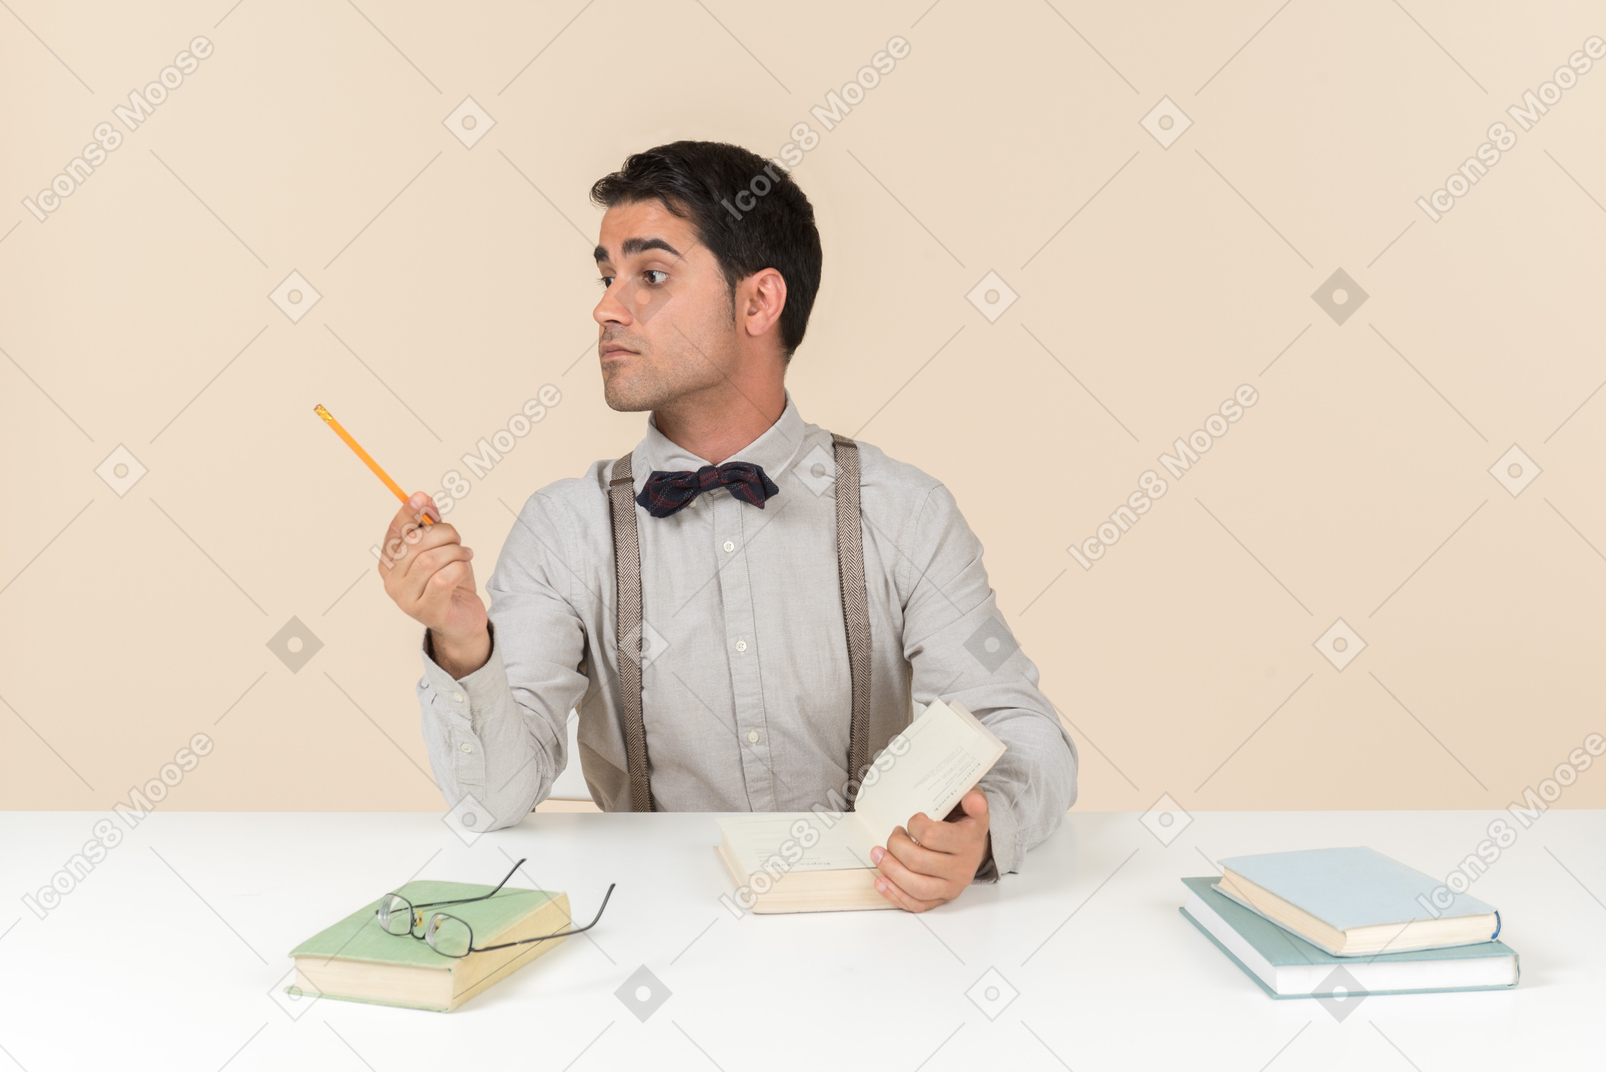 Erwachsener student, der am tisch sitzt und beiseite mit einem stift zeigt